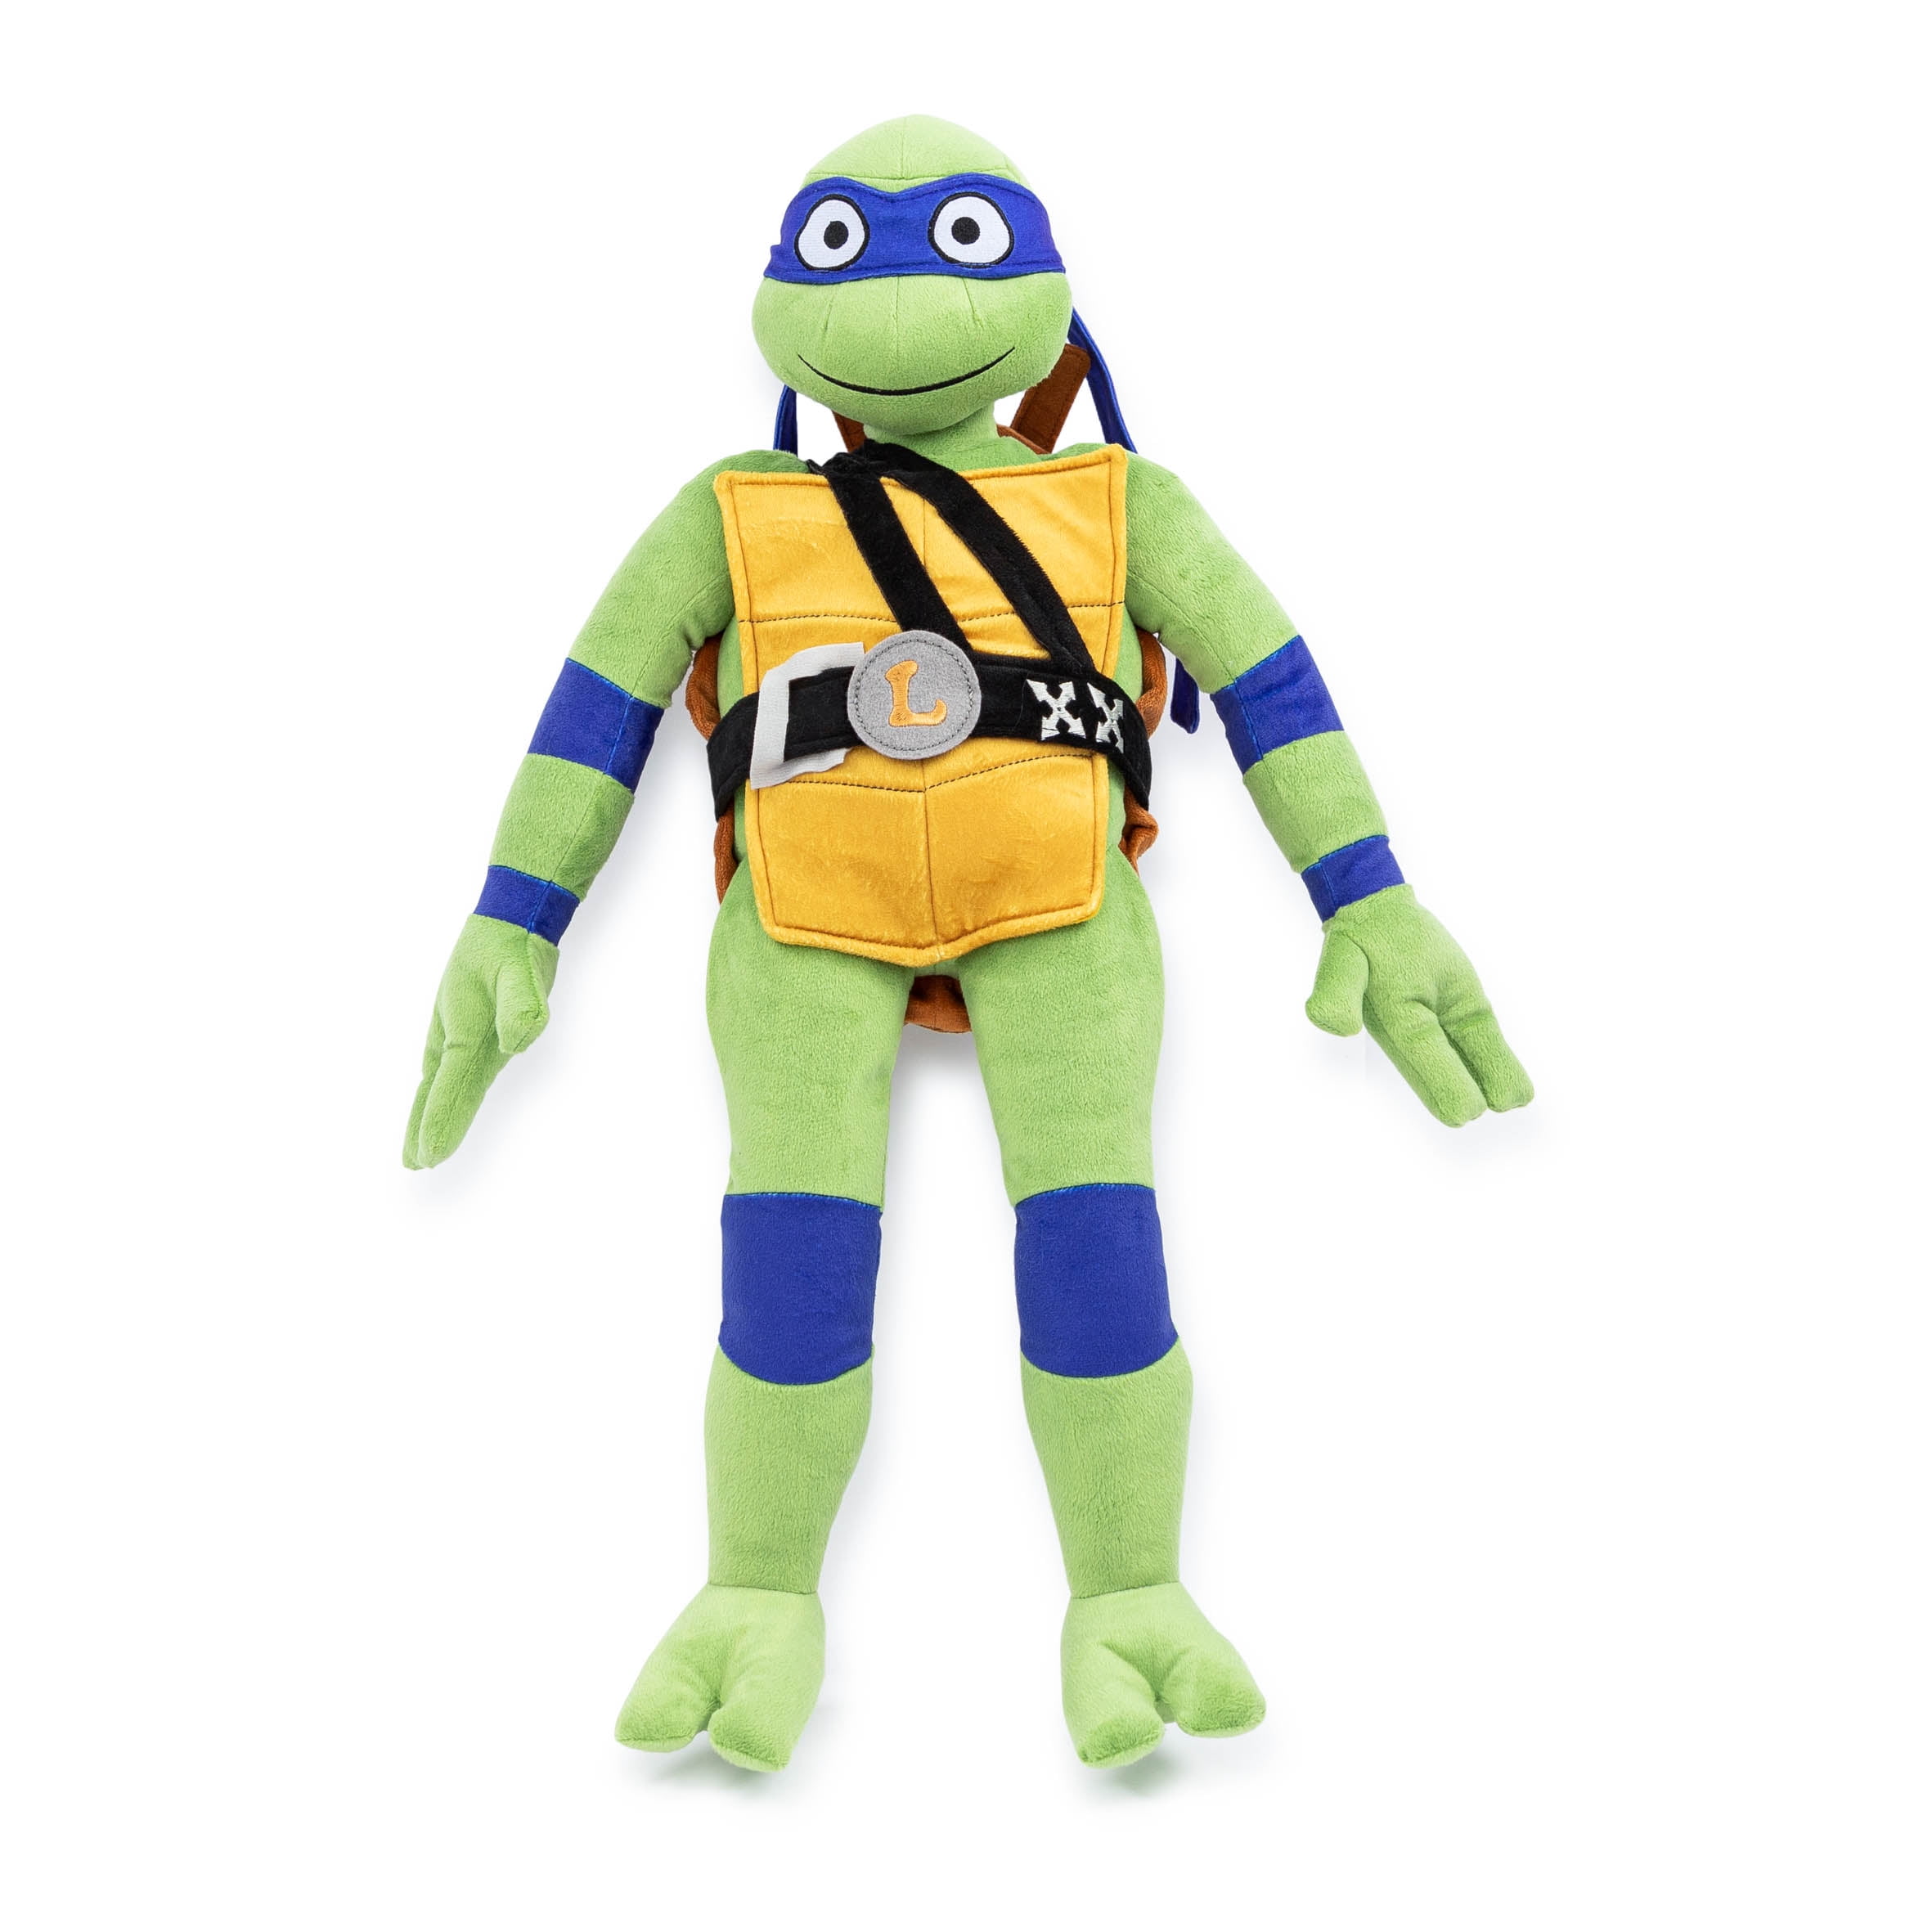 Leonardo Teenage Mutant Ninja Turtle Plush Toy Stuffed Animal 18 